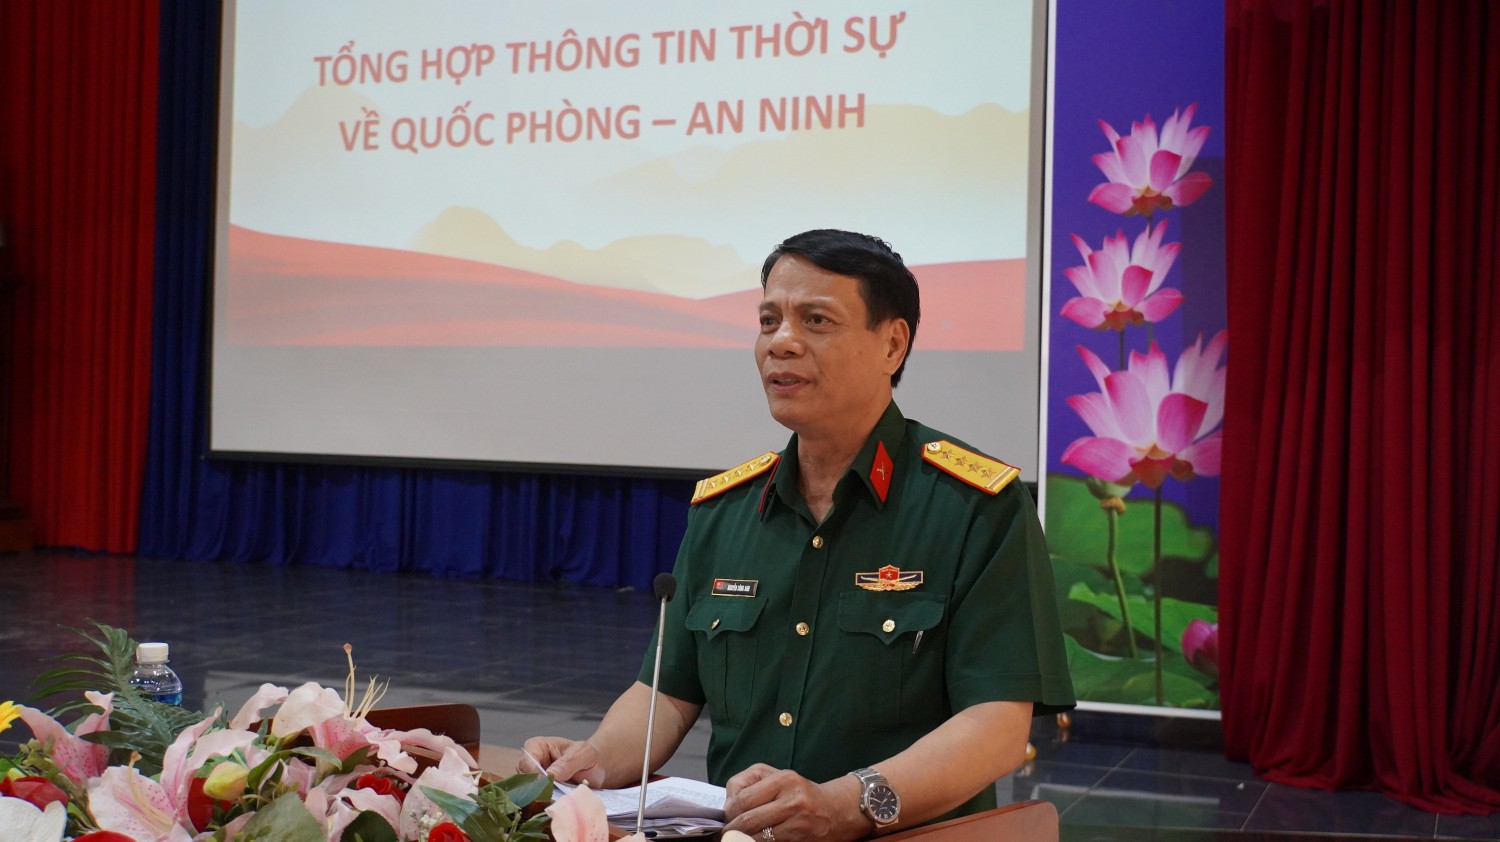 Tân Biên: Thông tin thời sự về quốc phòng, an ninh 